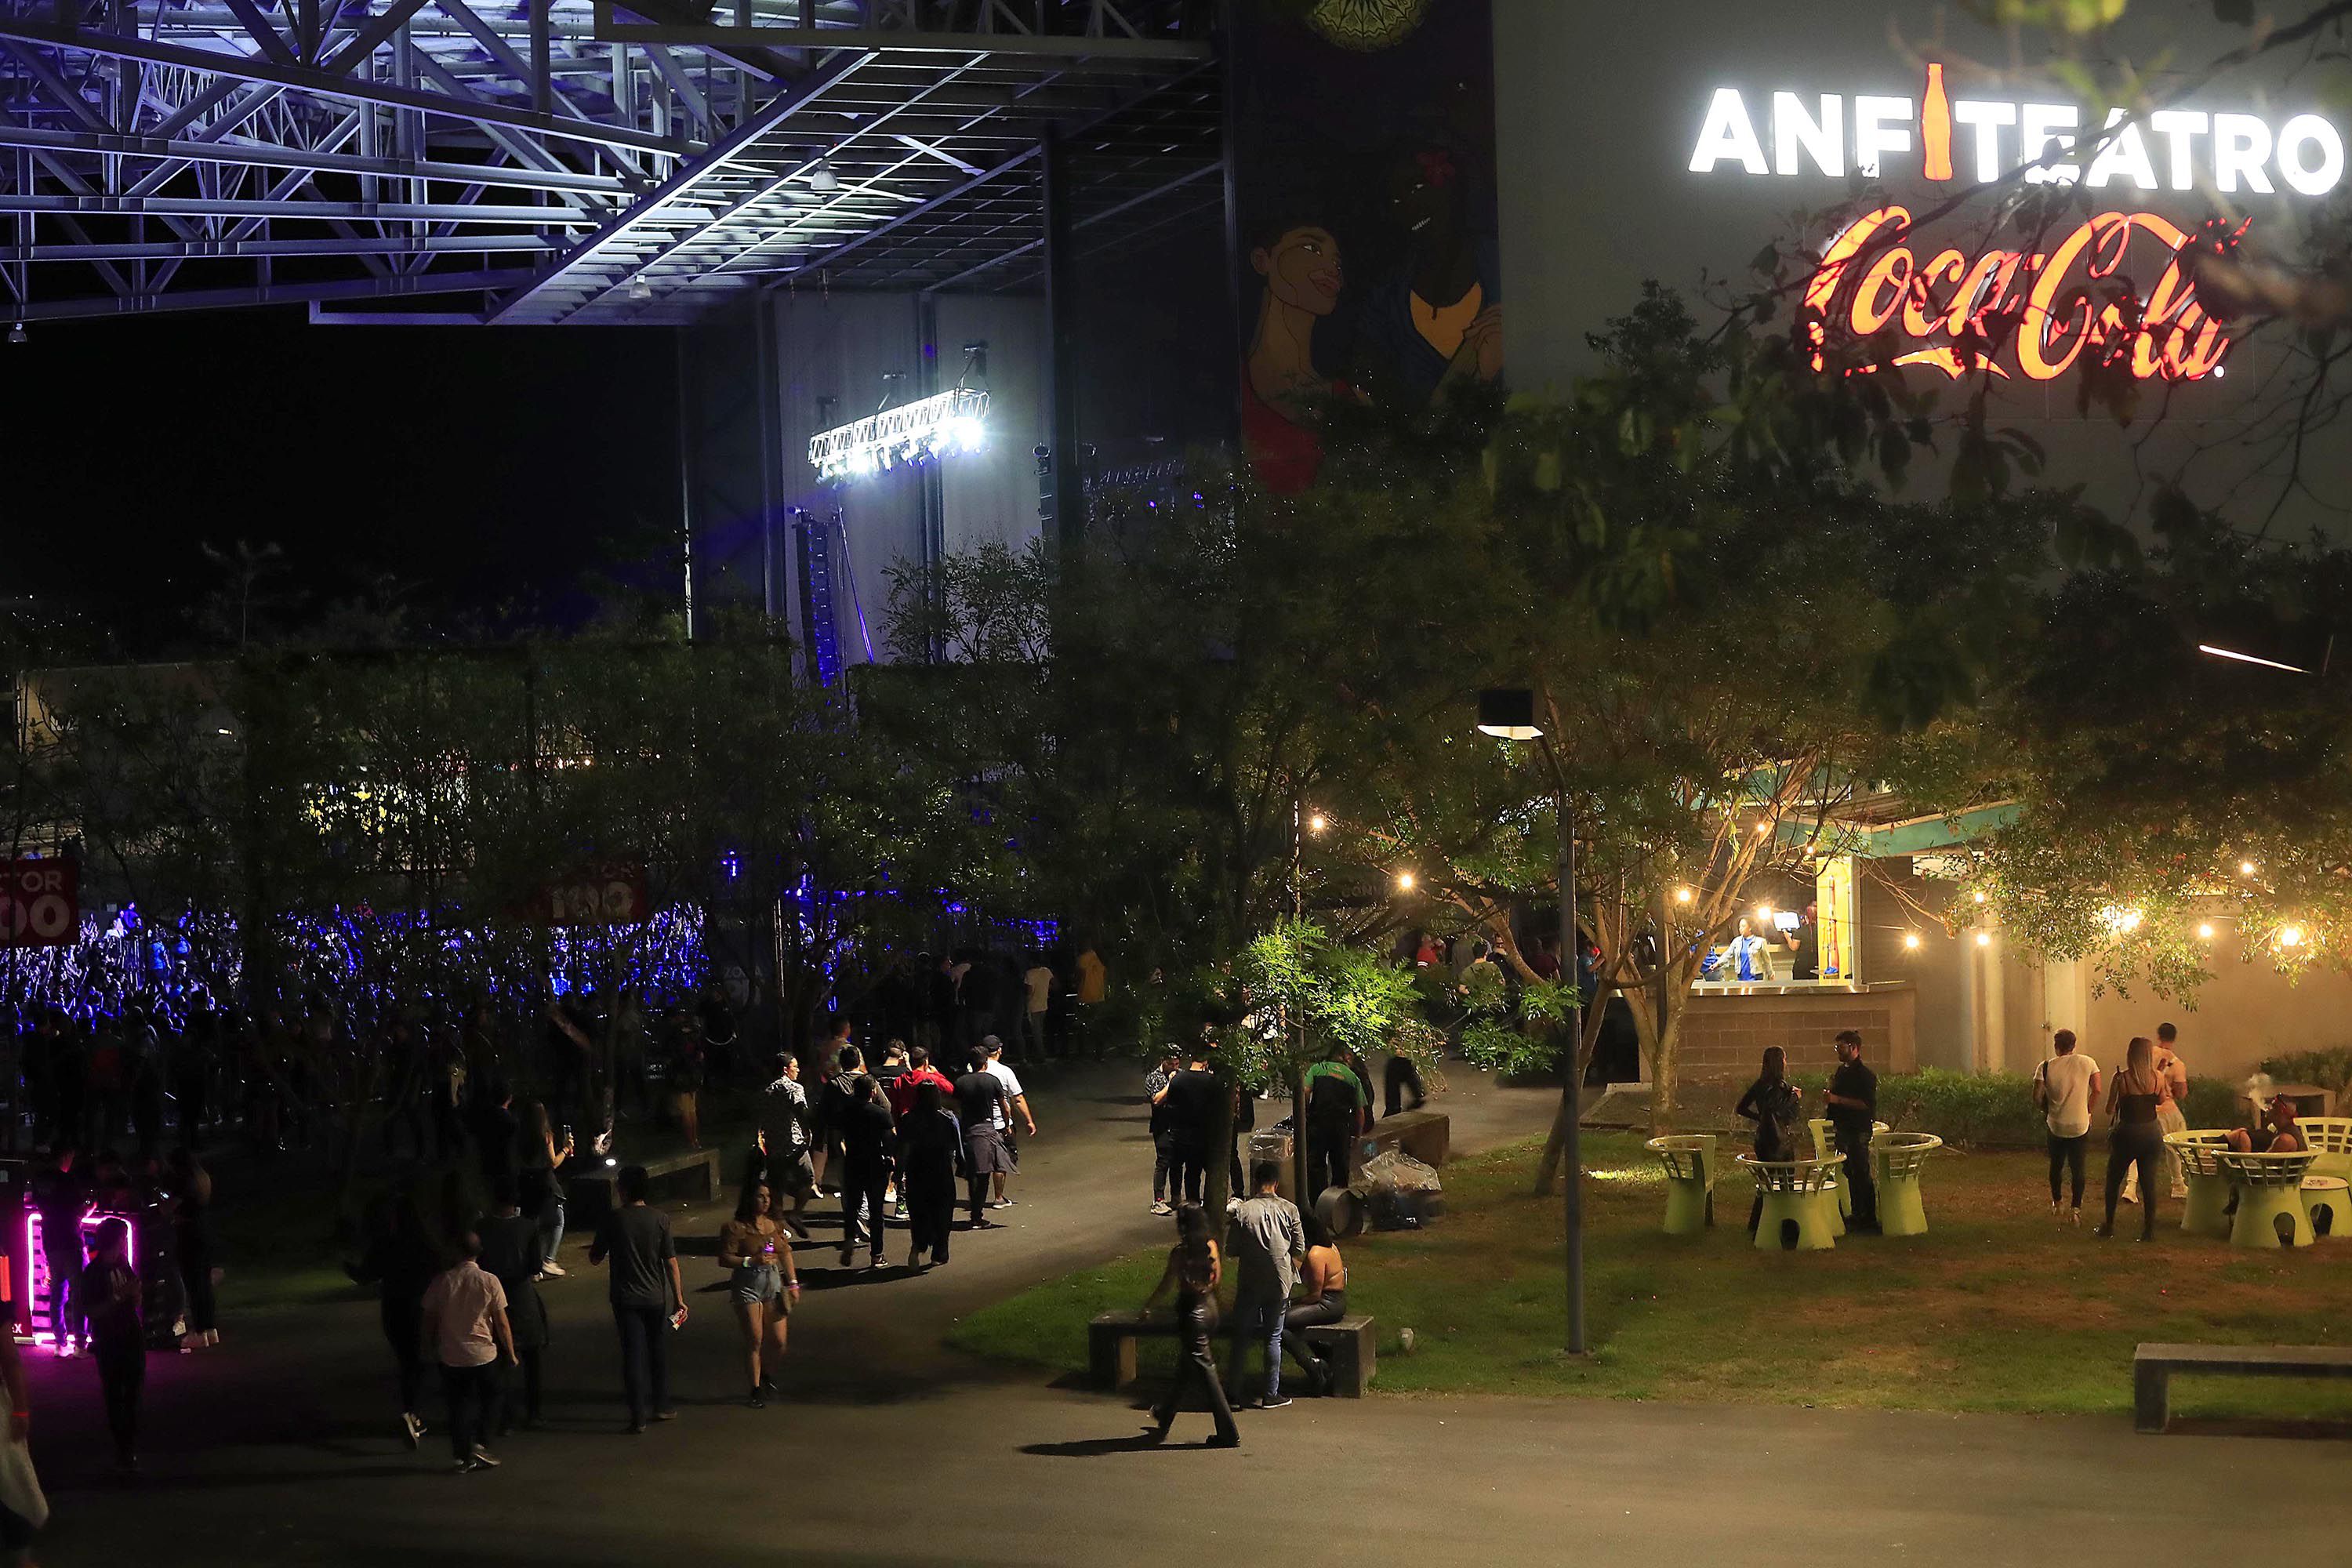 El Anfiteatro Coca-Cola del Parque Viva se convirtió en el 'dancefloor' más grande de Costa Rica la noche de este viernes 20 de enero.